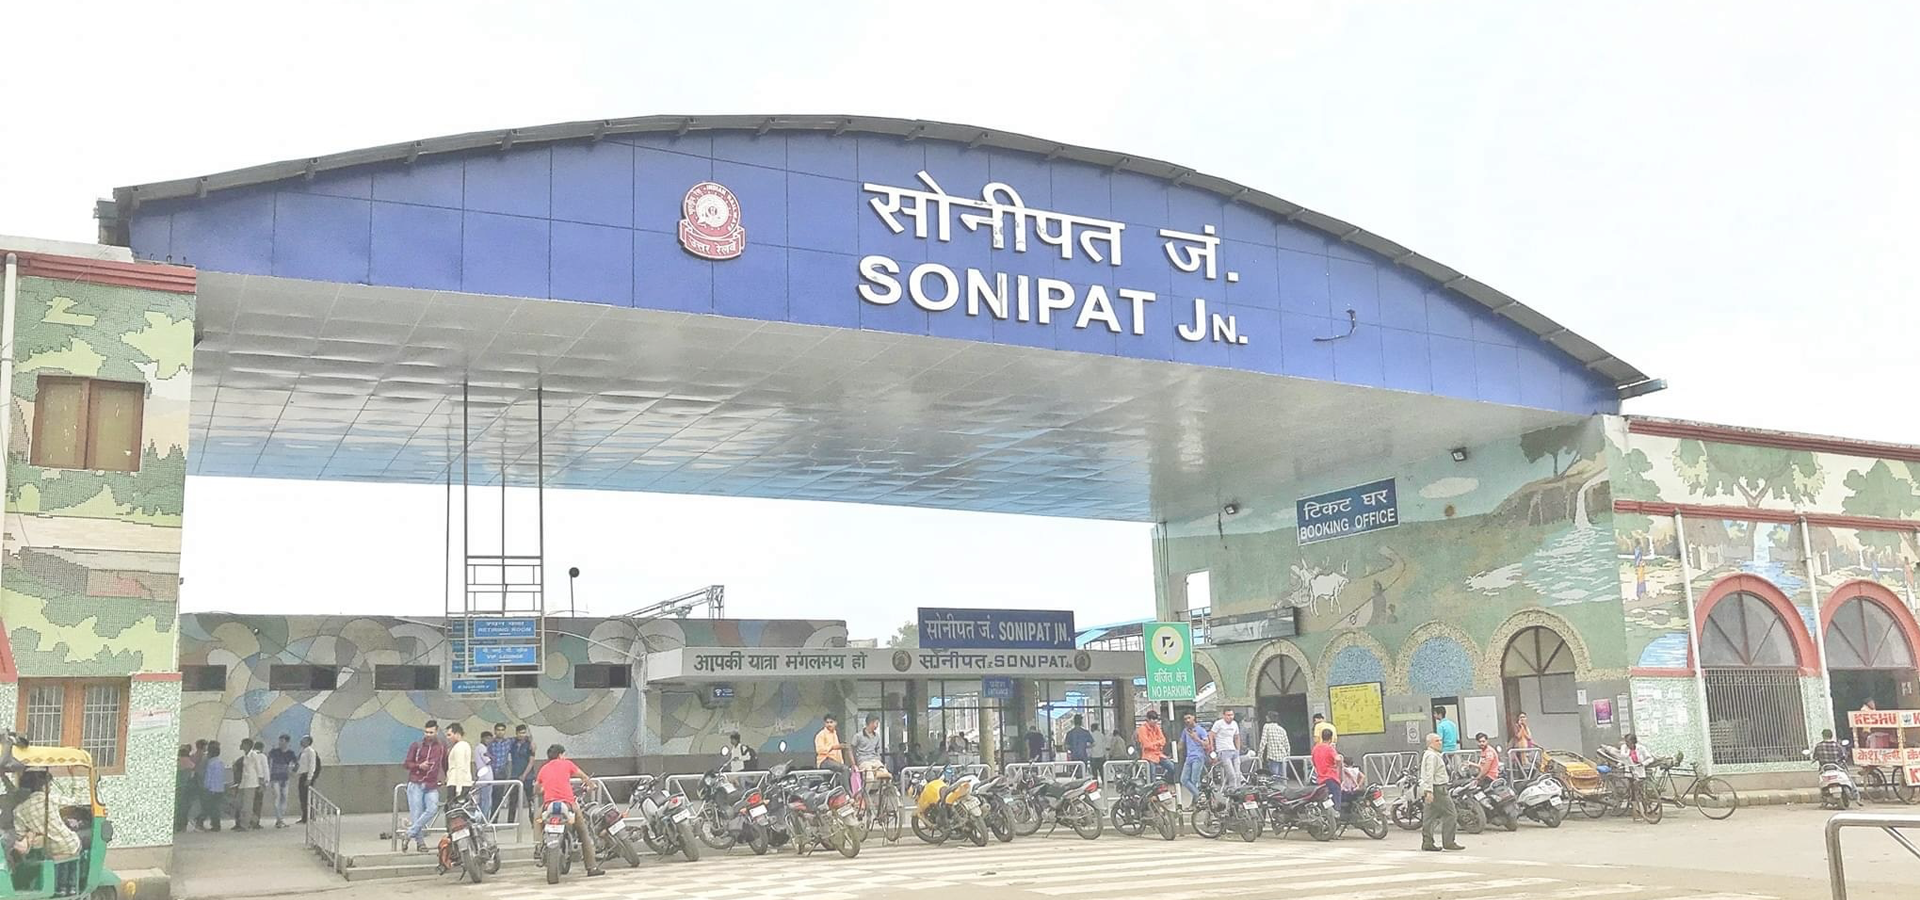 <b>Sonipat, Haryana, India</b>